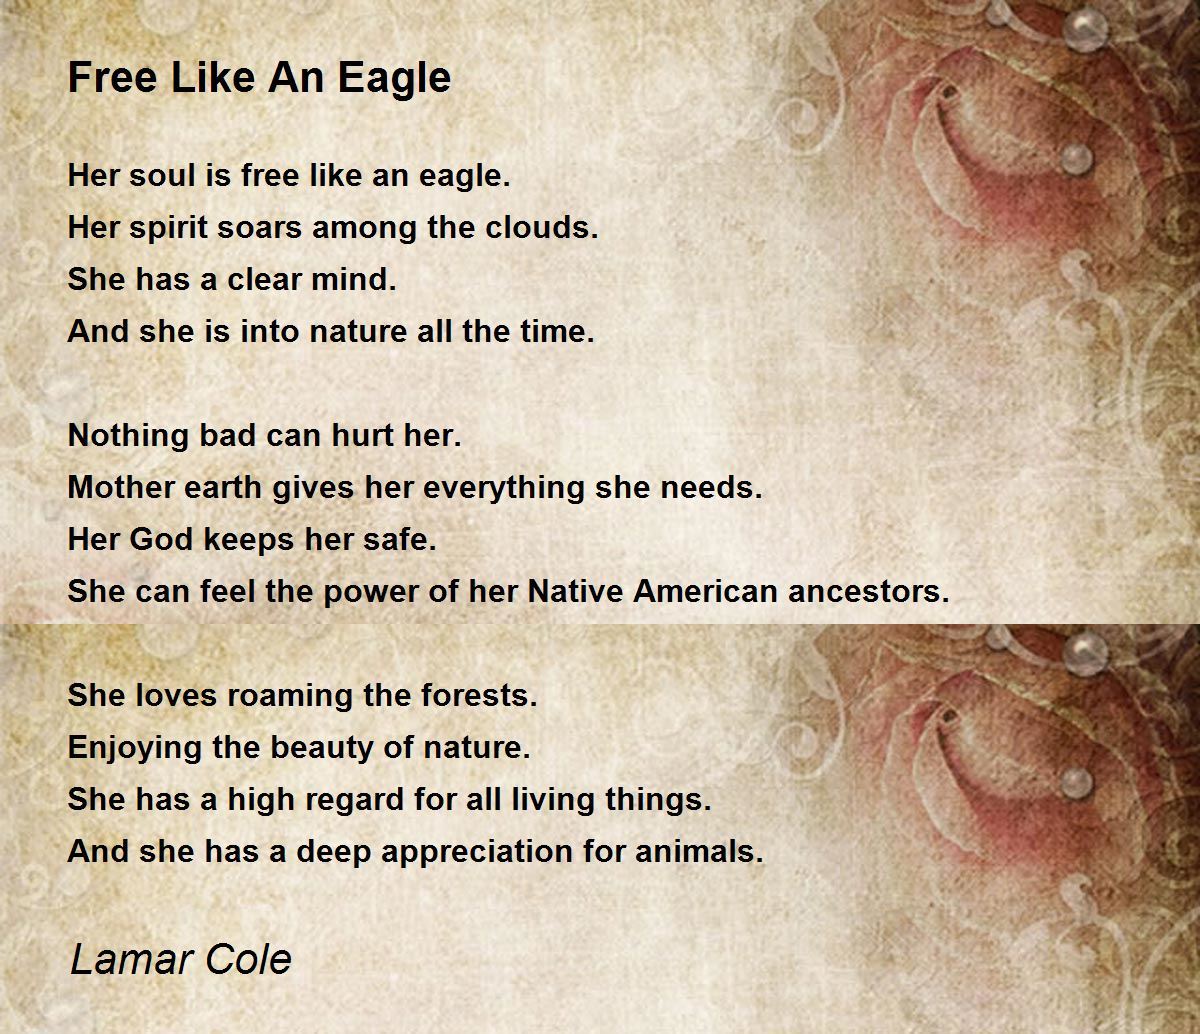 Free Like An Eagle - Free Like An Eagle Poem by Lamar Cole